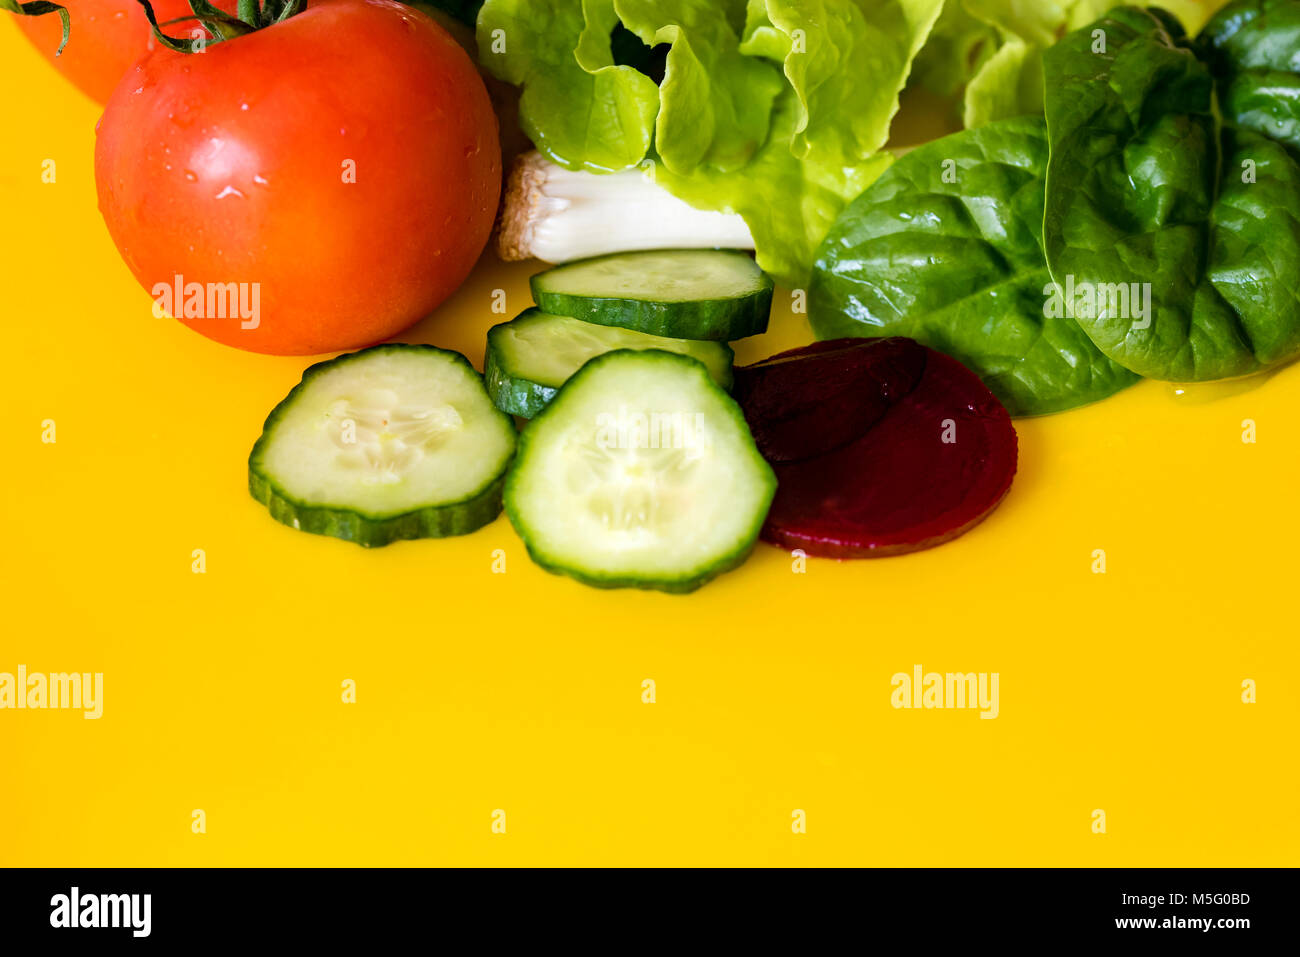 Frischen bunten Salat Zutaten, gelben Hintergrund, Raum für Text. Kopfsalat, Frühlingszwiebeln, Tomaten, Rote Bete und Gurkenscheiben, Nahaufnahme. Stockfoto